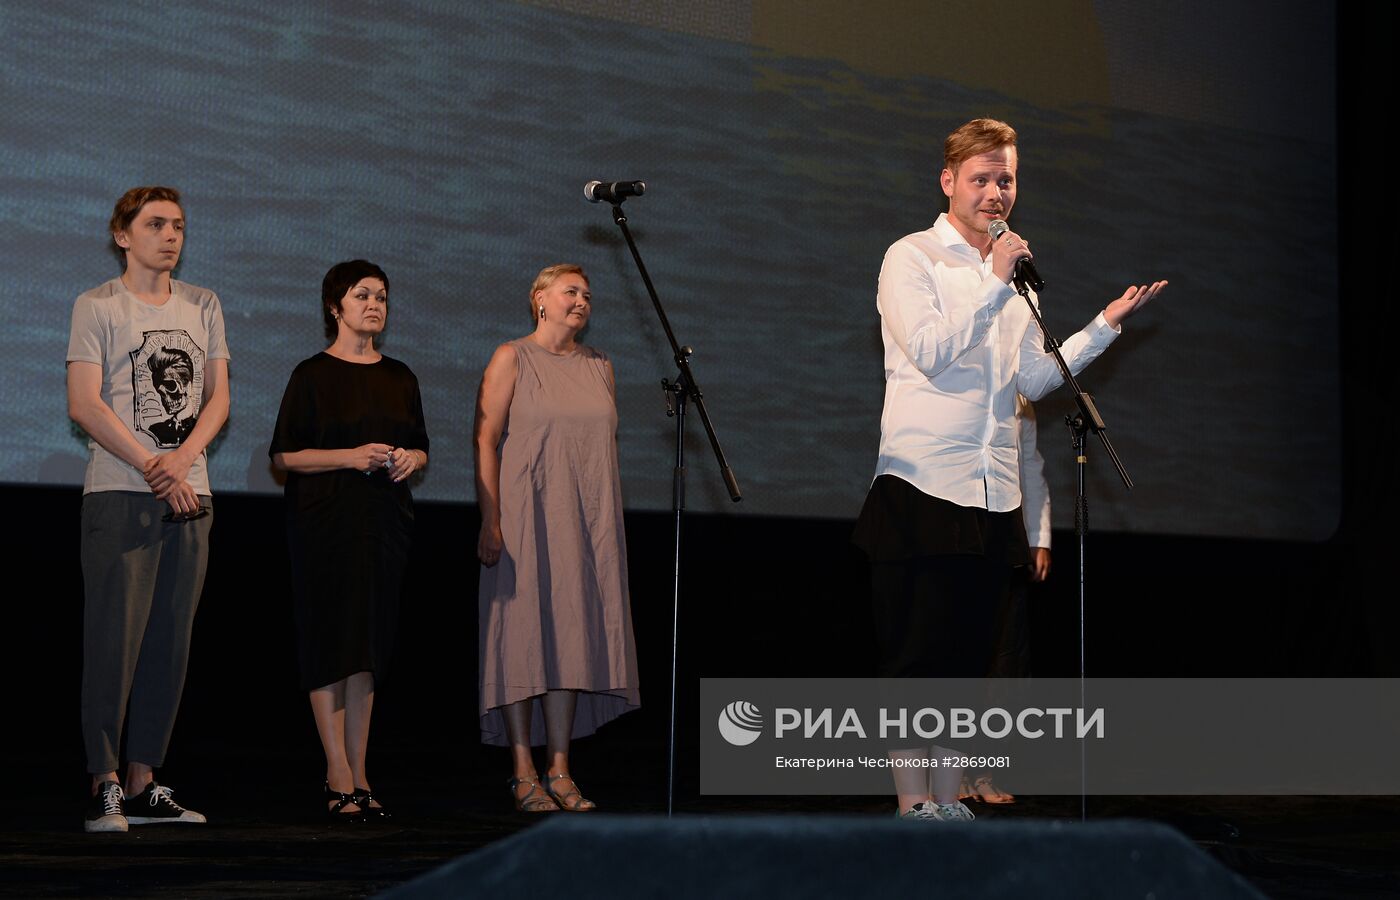 27-й Открытый Российский кинофестиваль "Кинотавр". День пятый